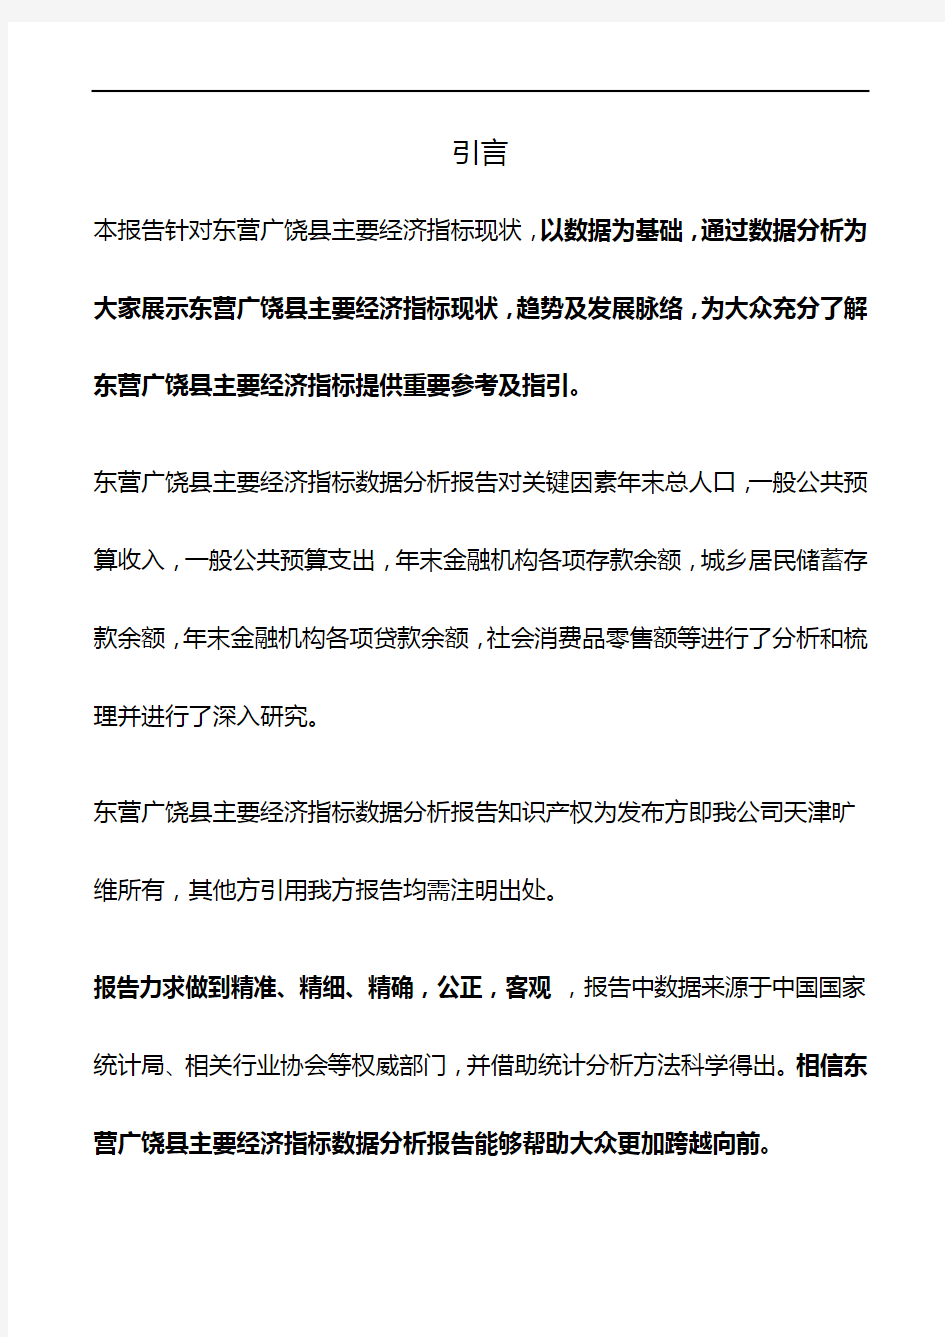 山东省东营广饶县主要经济指标3年数据分析报告2019版